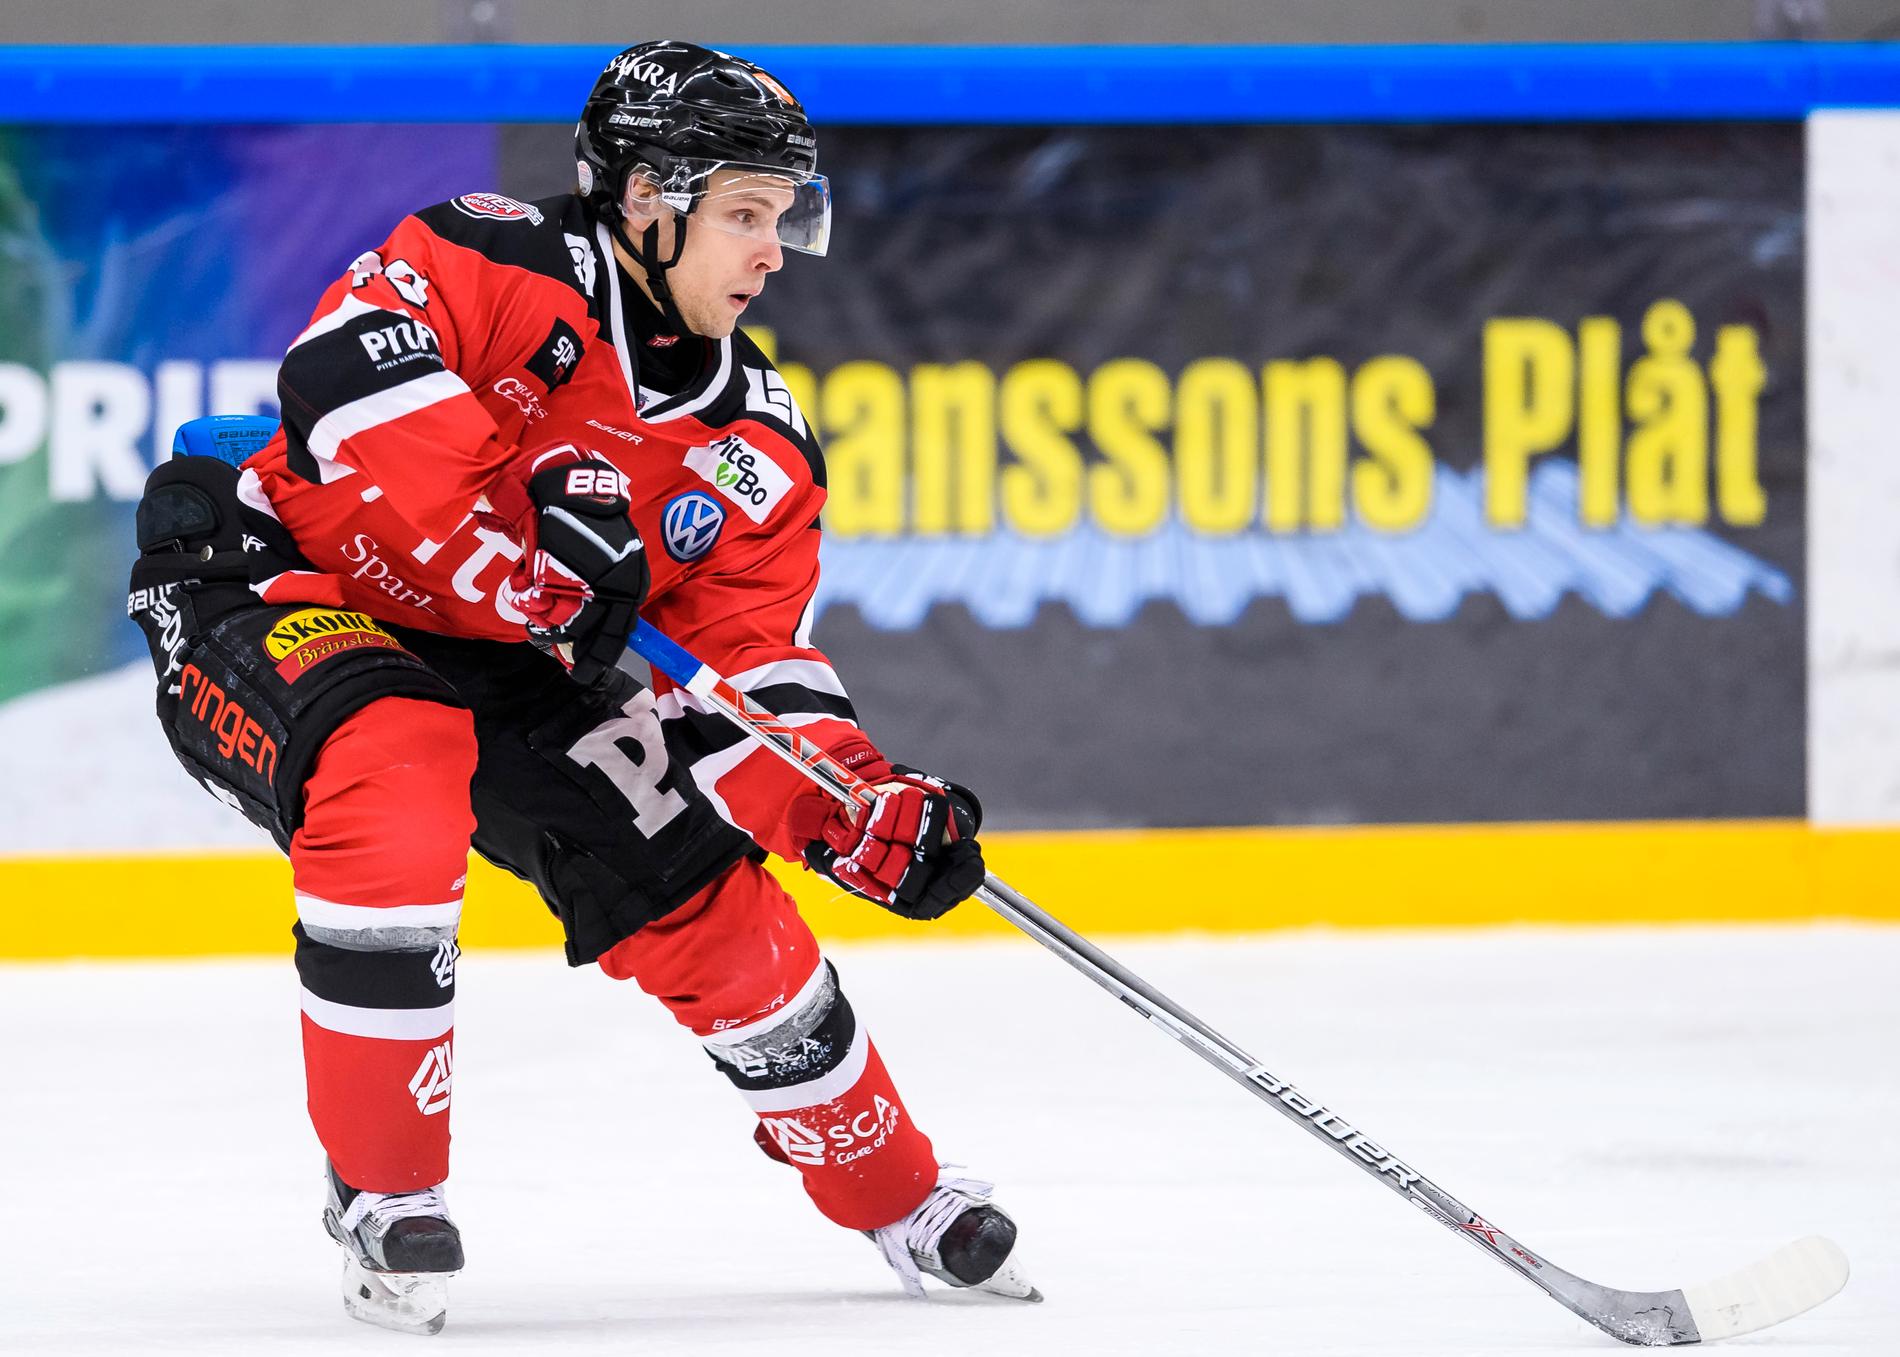 Magnus Isaksson, Piteå Hockey.